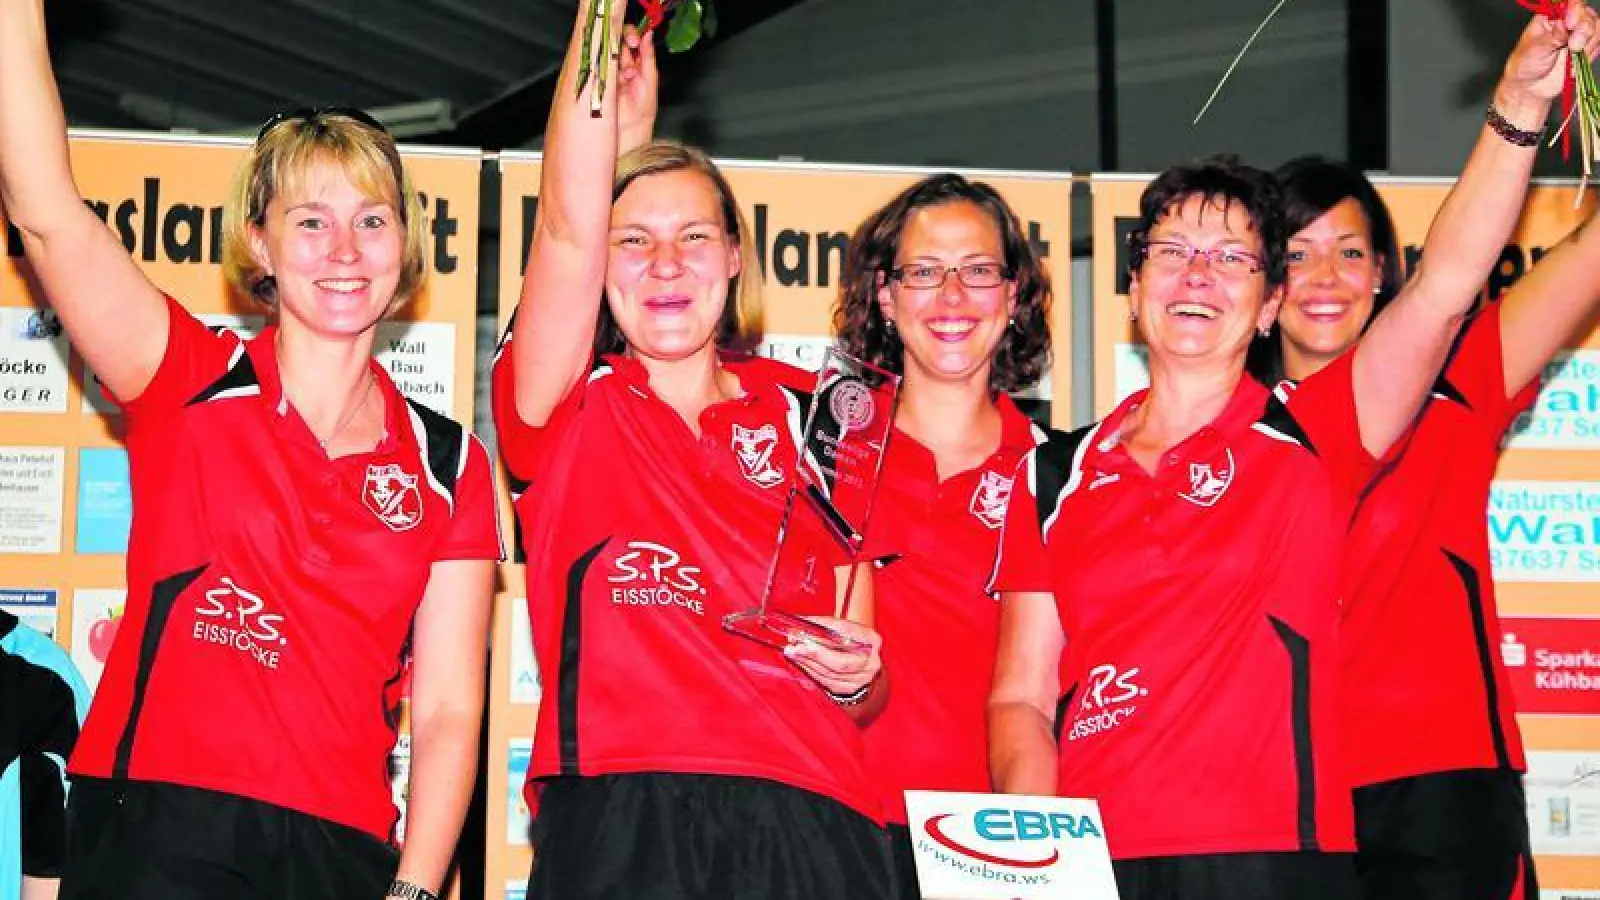 &lt;p&gt; &lt;x_bildunterschr&gt; &lt;b&gt;Groß war die Freude &lt;/b&gt; des Kühbacher Damenteams mit (von links) Verena Elsenberger, Katharina Ferber, Veronika Filgertshofer, Marianne Weigl und Sarah Specht nach dem Triumph in der Bundesliga Süd.  Foto: ei &lt;/x_bildunterschr&gt; &lt;/p&gt;